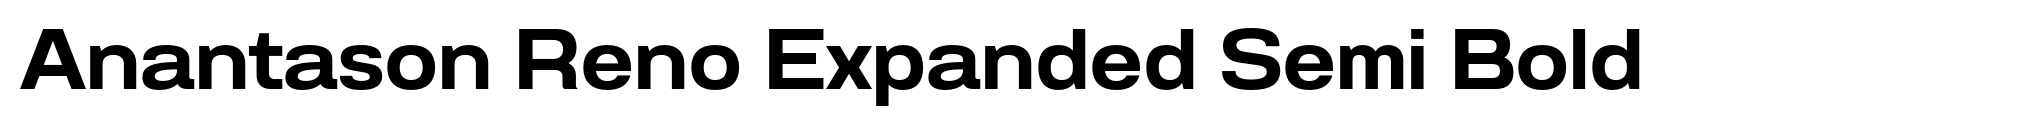 Anantason Reno Expanded Semi Bold image